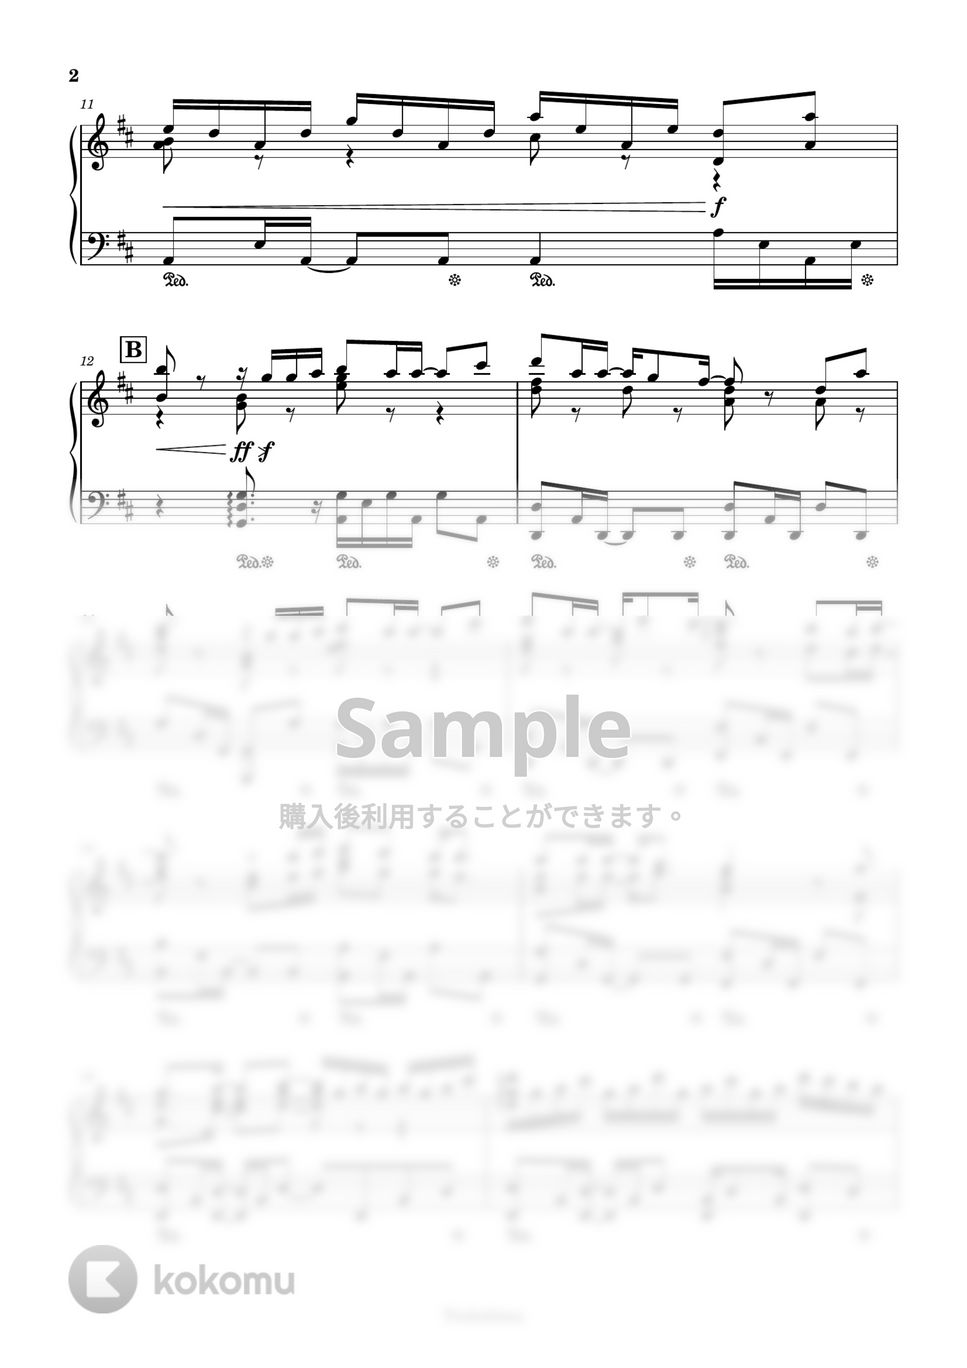 東京ディズニーランド - It's Your Song (ショー『ミッキーのマジカルミュージックワールド』より) by Trohishima